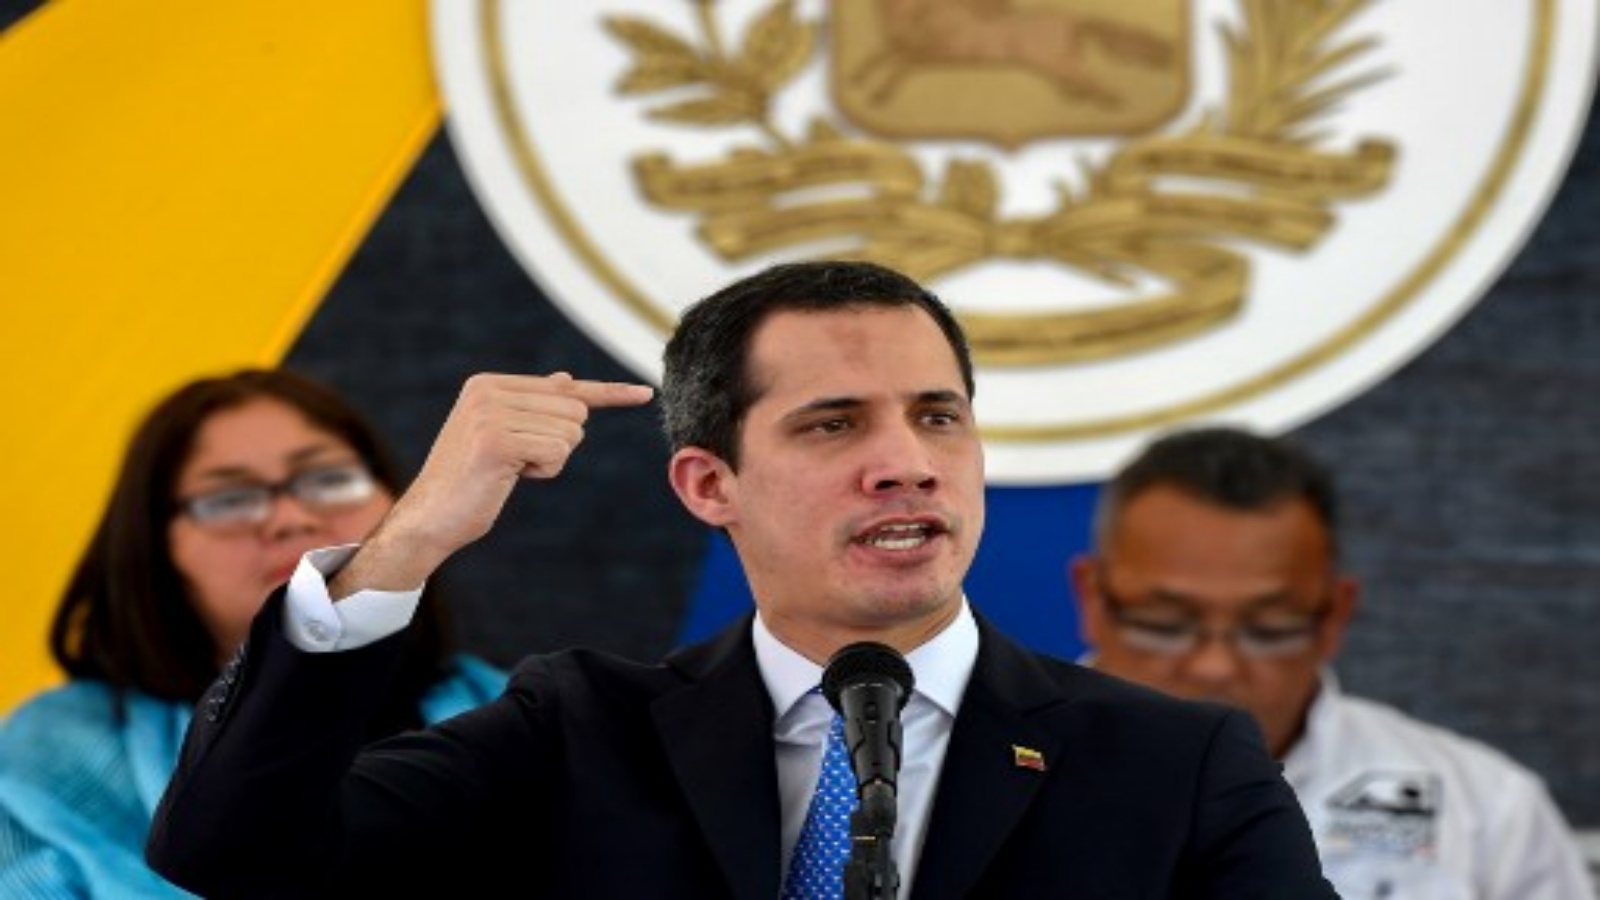  زعيم المعارضة الفنزويلي والرئيس بالنيابة الذي نصب نفسه خوان غوايدو أثناء حديثه خلال اجتماع مع ممثلي النقابات في الاتحاد الطبي الفنزويلي في كاراكاس.